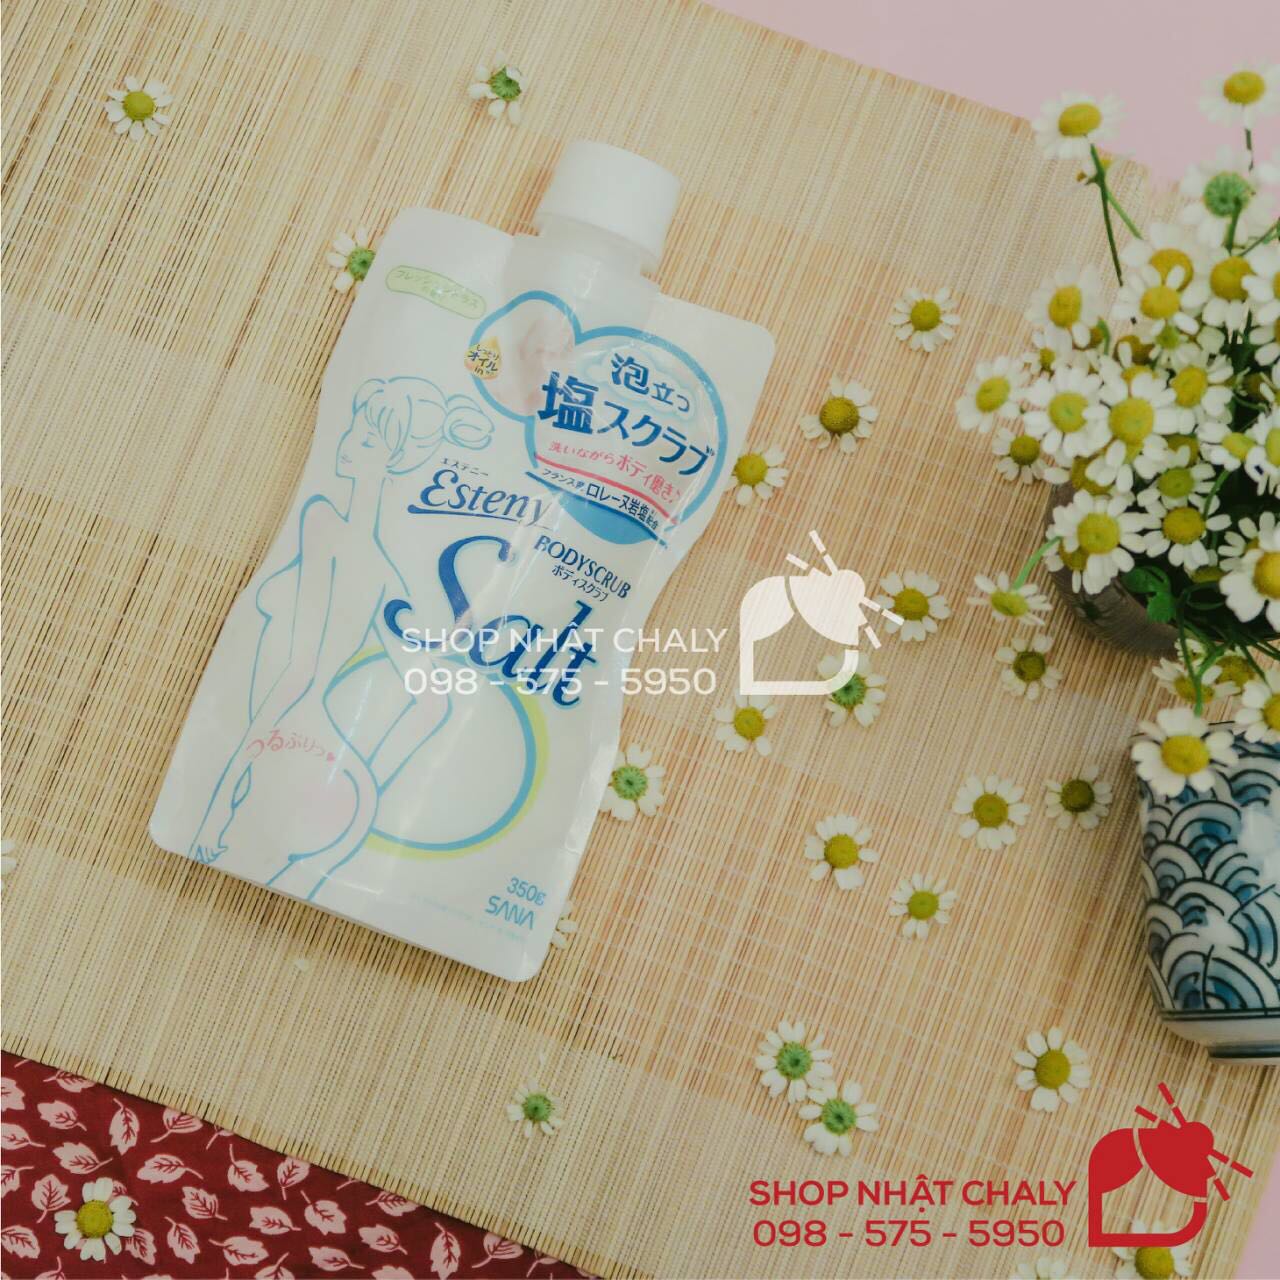 Muối tắm Nhật body salt của hãng Sana Esteny là muối tắm tẩy tế bào chết nổi tiếng Nhật Bản, được review cao trên Cosme Ranking và được người Nhật cả nam và nữ ưa chuộng